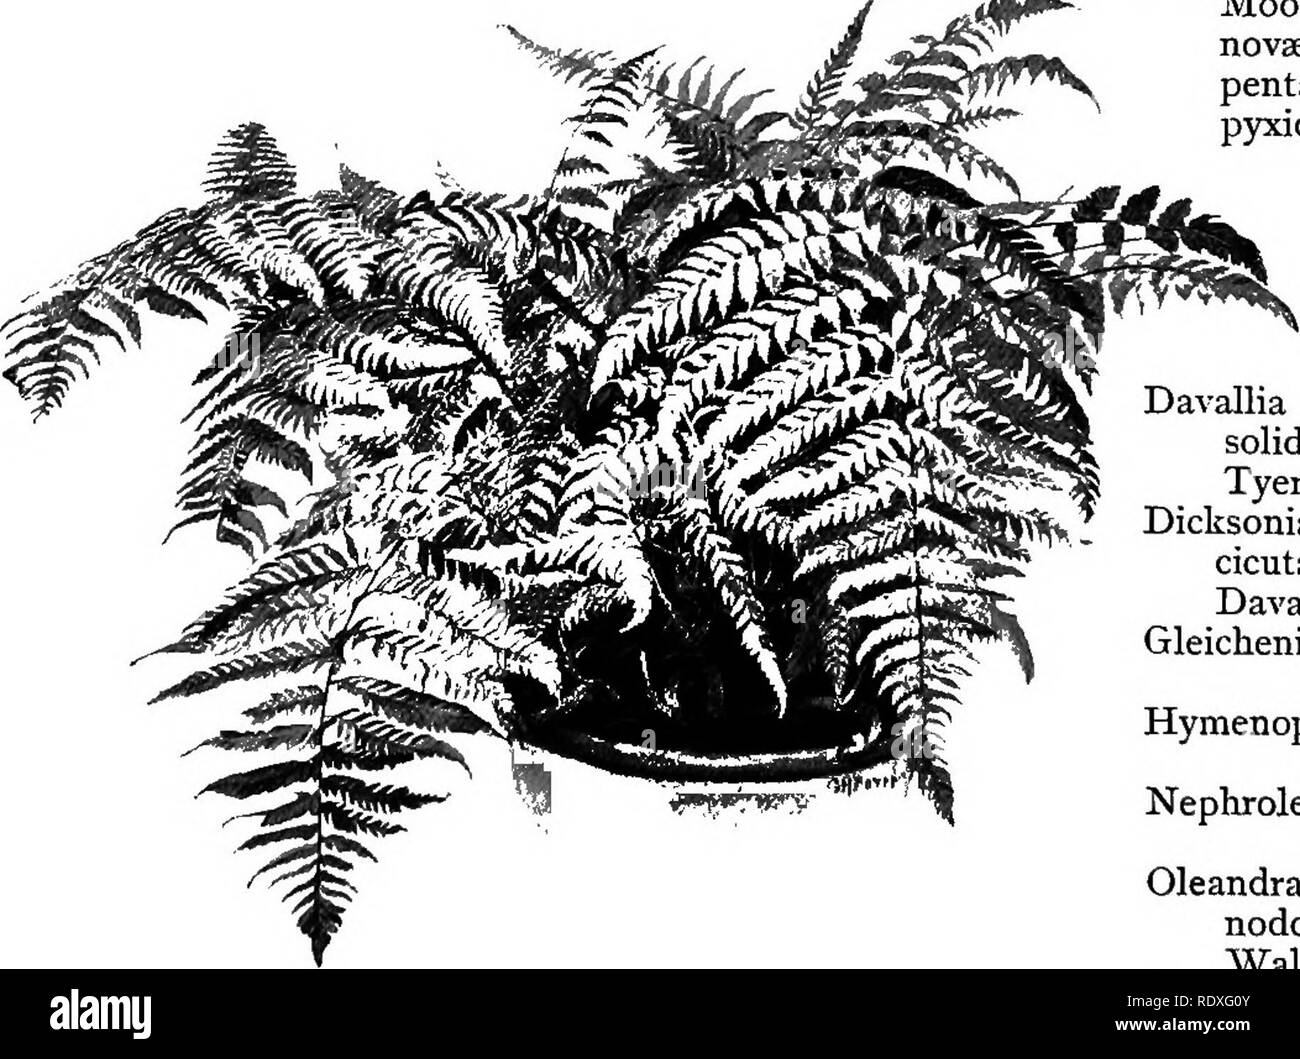 . The Book of gardening; a handbook of horticulture. Gardening; Horticulture. 562 THE BOOK OF GARDENING. Nephrolepis acuta. Bausei. cordifolia. davallioides.* d. fuvcans.* Duffii.* exaltata. pluma. Polypodium appendiculatum.' Those marked Polypodium lachnopus. Paradisas. sub-auriculatum (Fig. 341). sub-petiolatum. verrucosum.* Pteris moluccana.* Woodwardia orientalis. radicans. r. cristata. require stove temperature. Perns of Climbing Habit. Lygodium dichotomum.* japonicum. palmatum. pinnatifidum.* Those marked Lygodium scandens (Fig. 337). venustum. * volubile.* require stove temperature. Fer Stock Photo